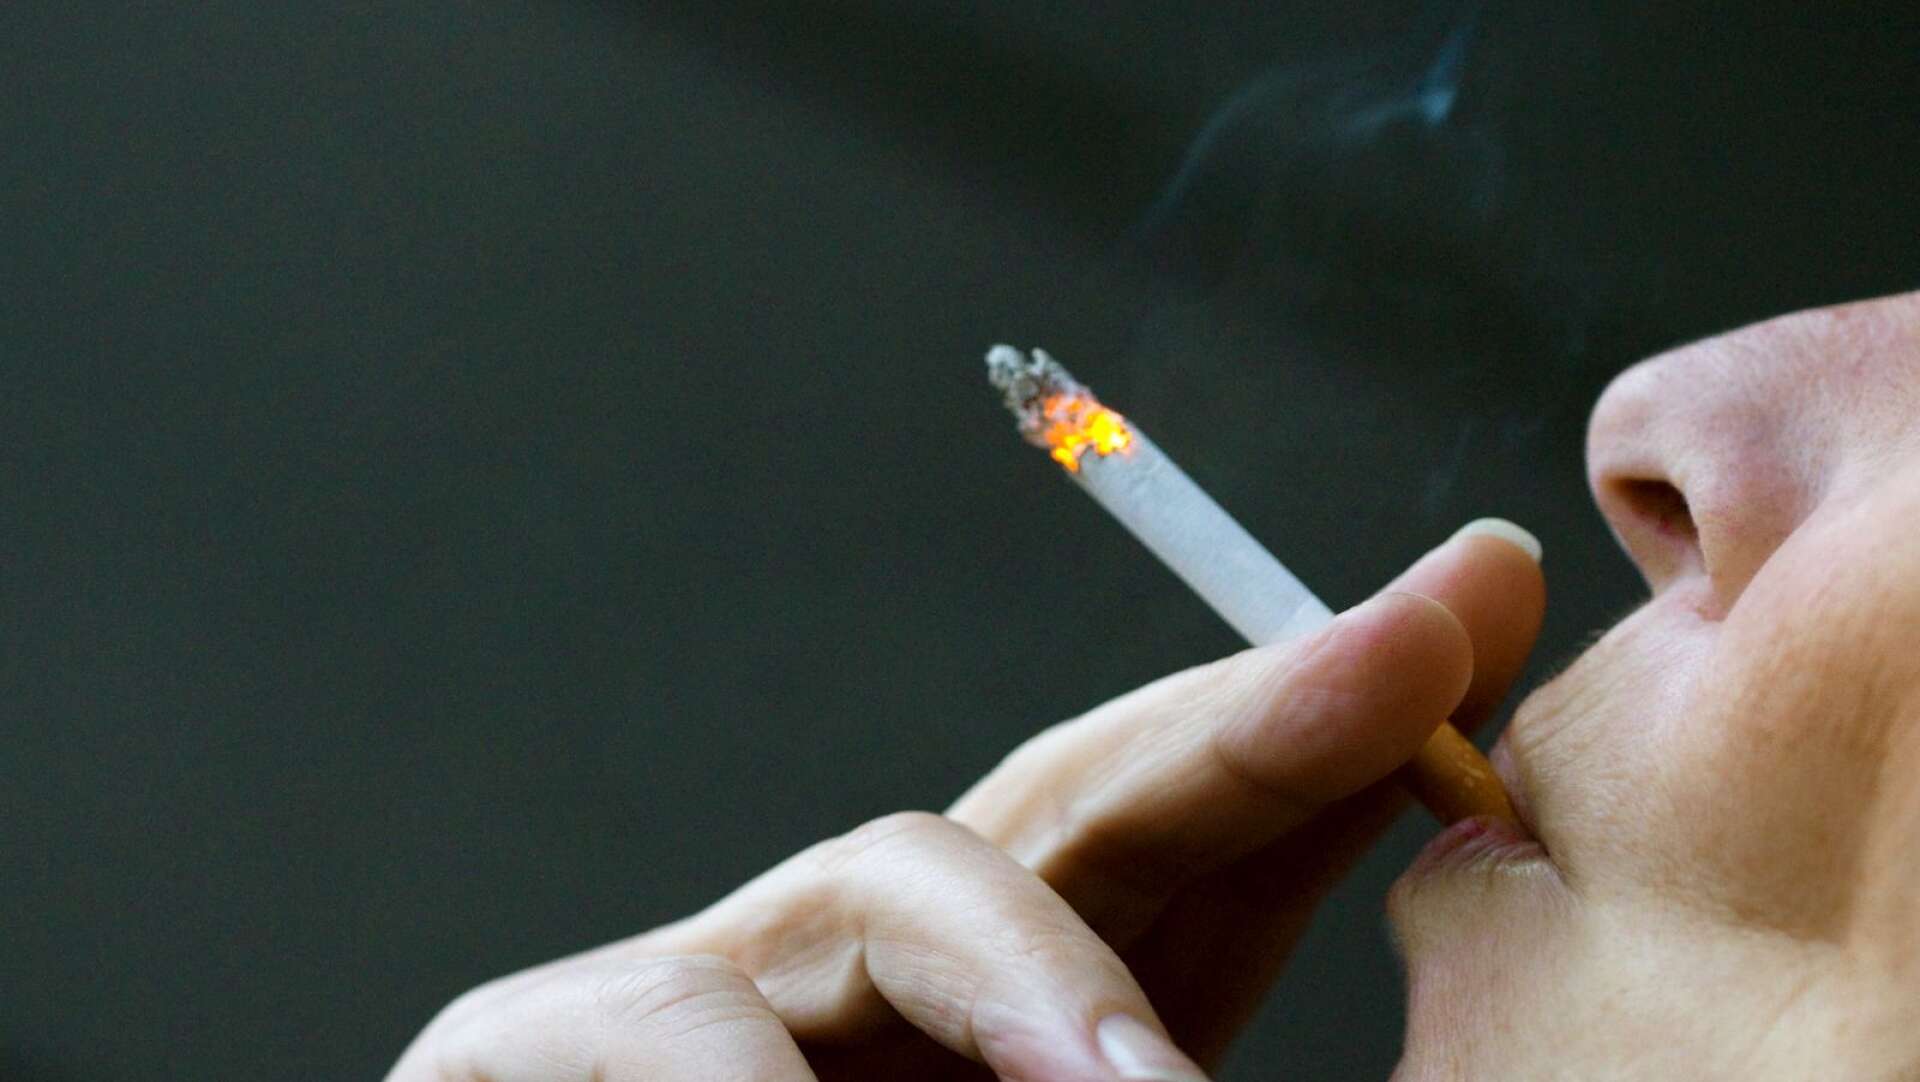 Det nya rökförbudet har blivit omdiskuterat på NWT:s insändarsidor och sida på Facebook under veckan.